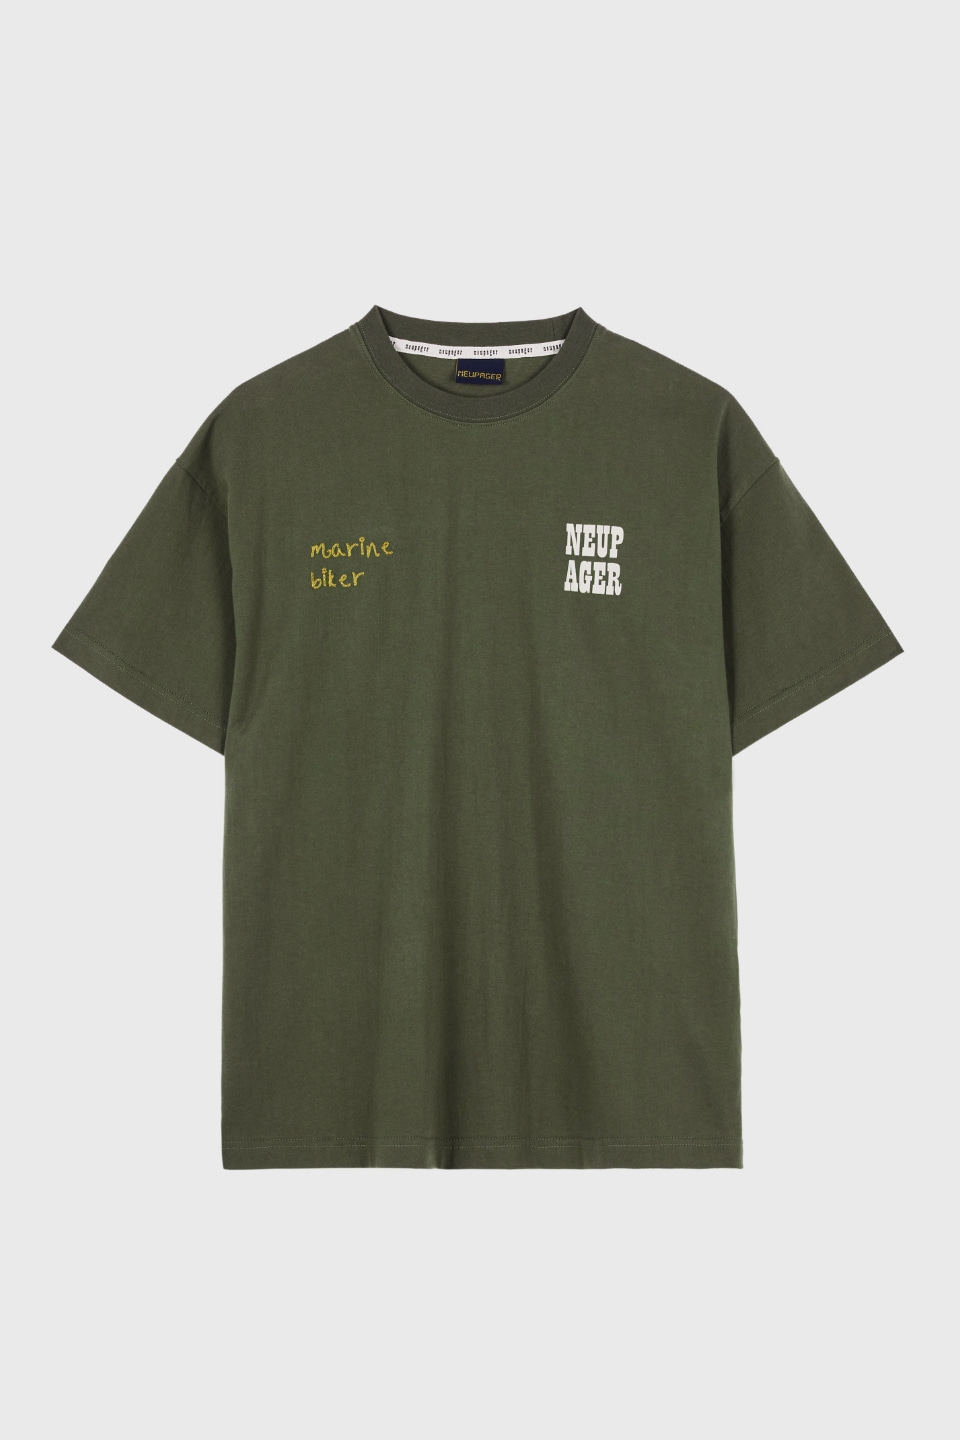 marine biker t-shirt - khaki